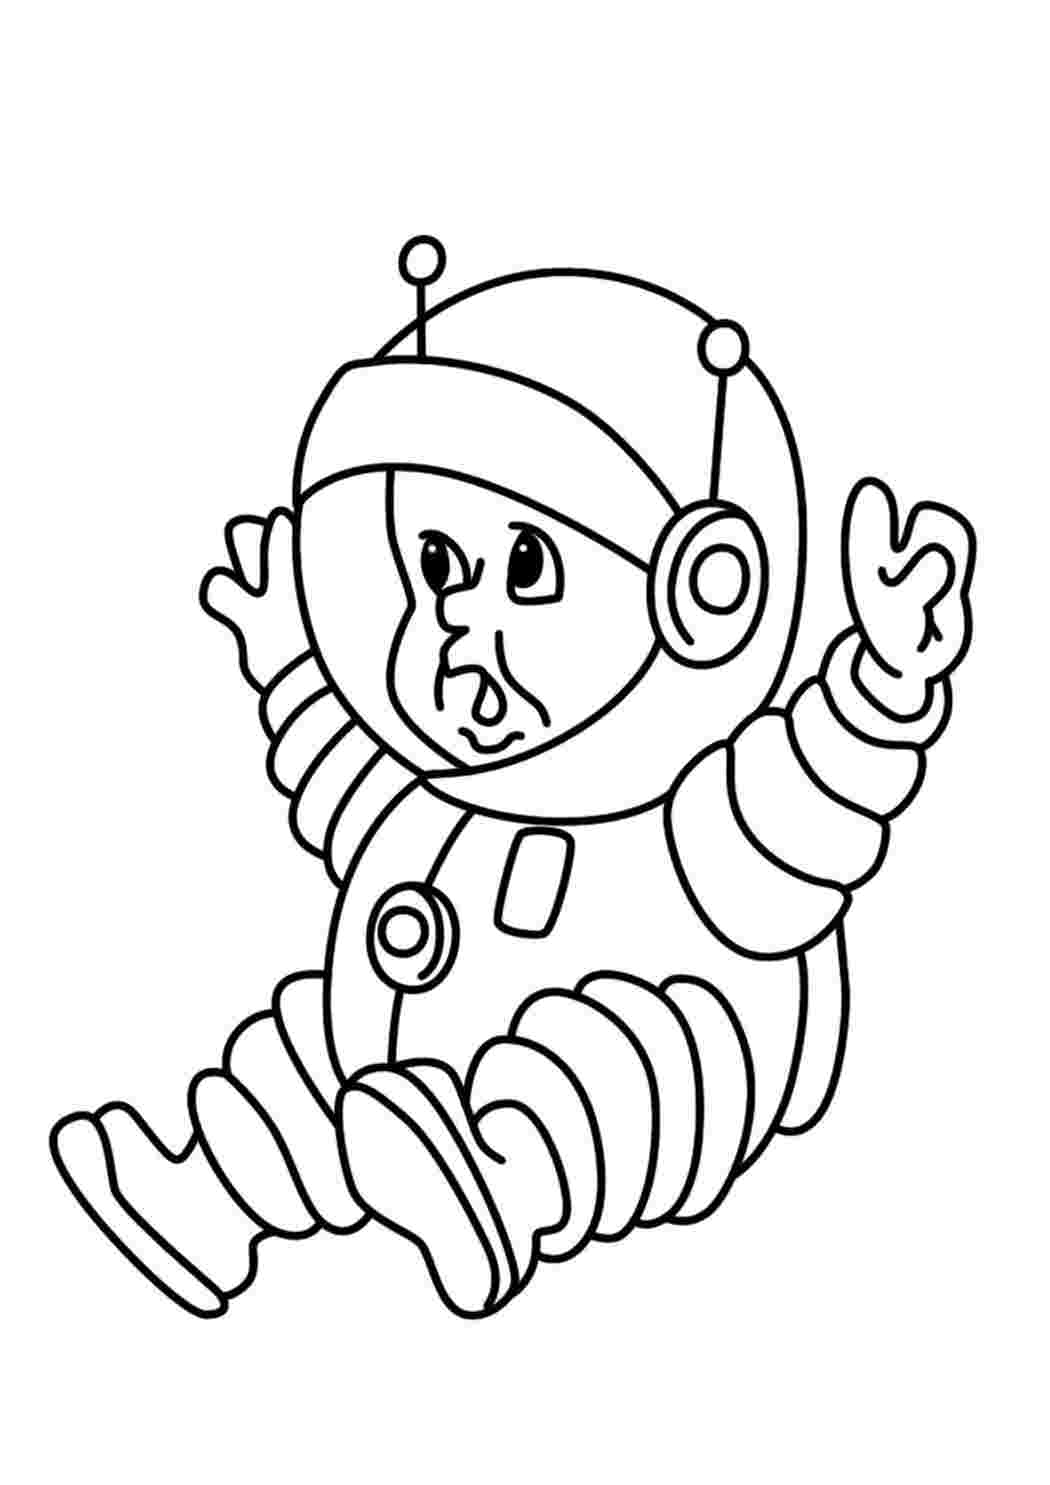 Шаблон космонавта для вырезания из бумаги распечатать. Космонавт раскраска для детей. Космонавт для раскрашивания для детей. Космонавт раскраска для малышей. Космонавт детская раскраска.